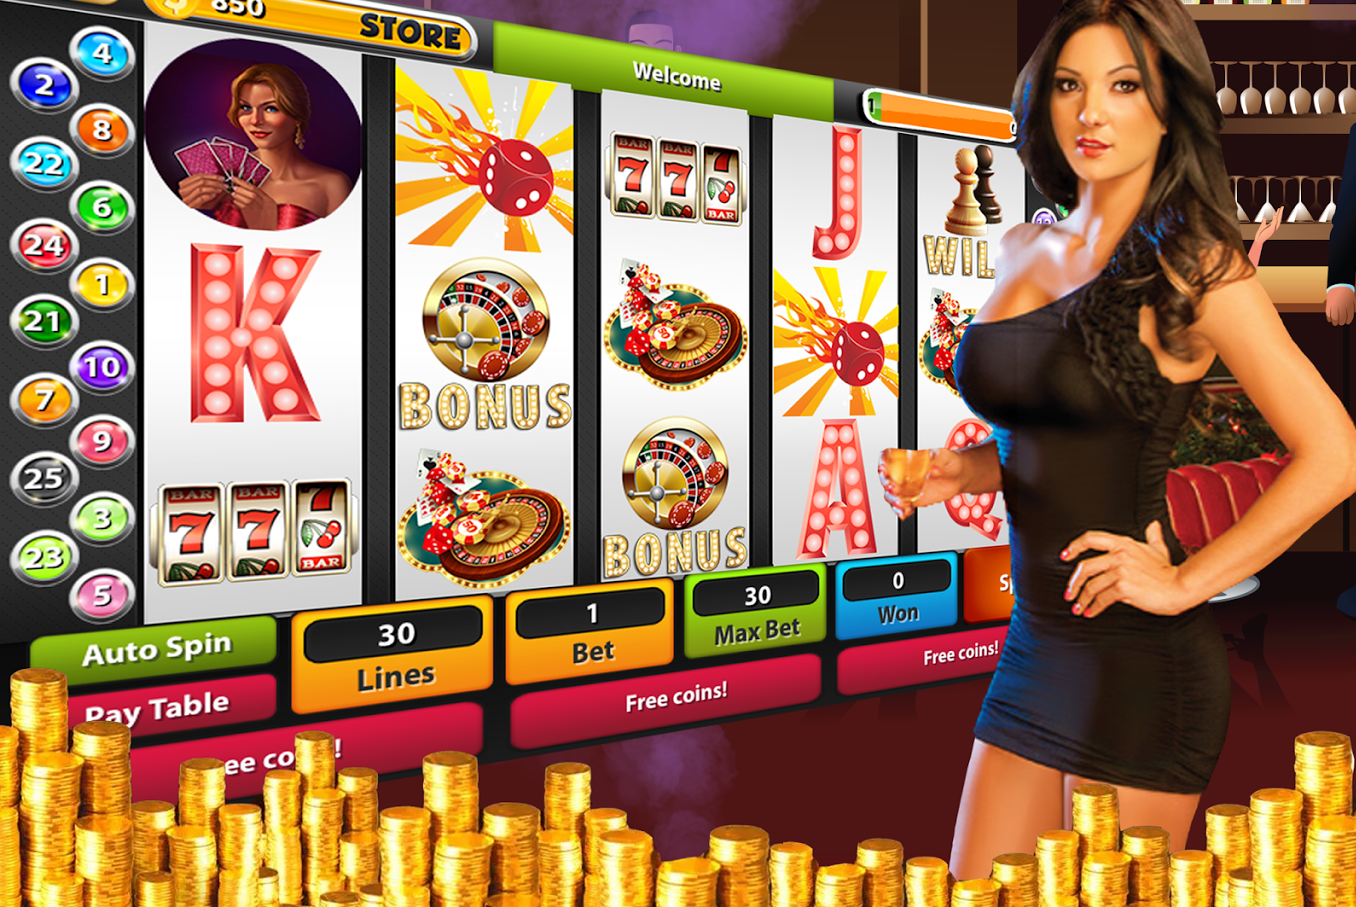 игровые автоматы онлайн интернет казино